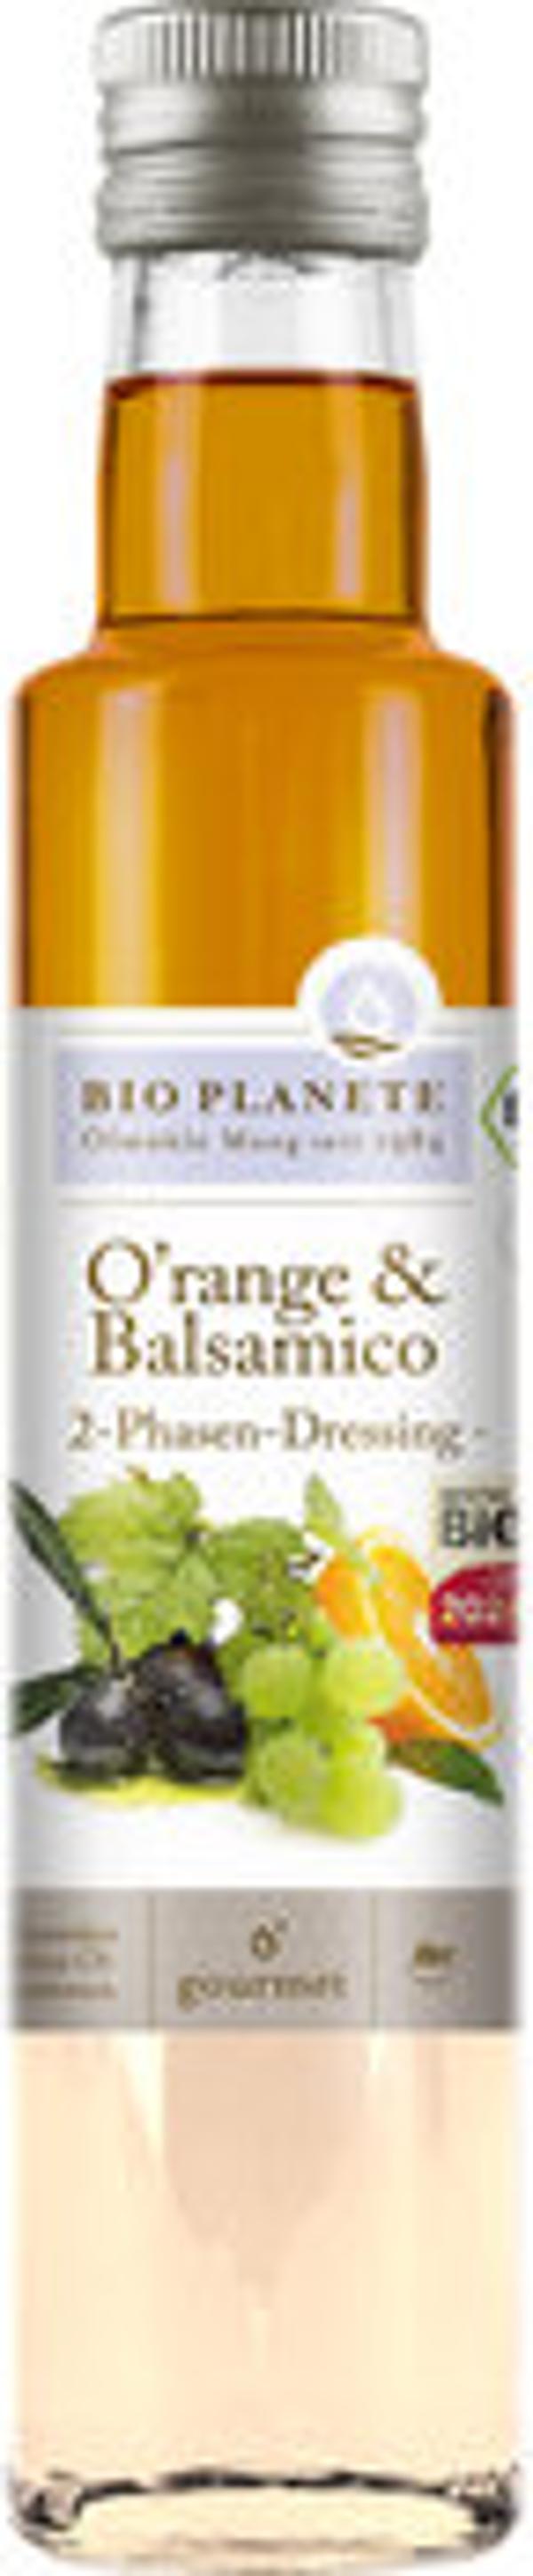 Produktbild von Bio Planète O'range und Balsamico Essig 250ml